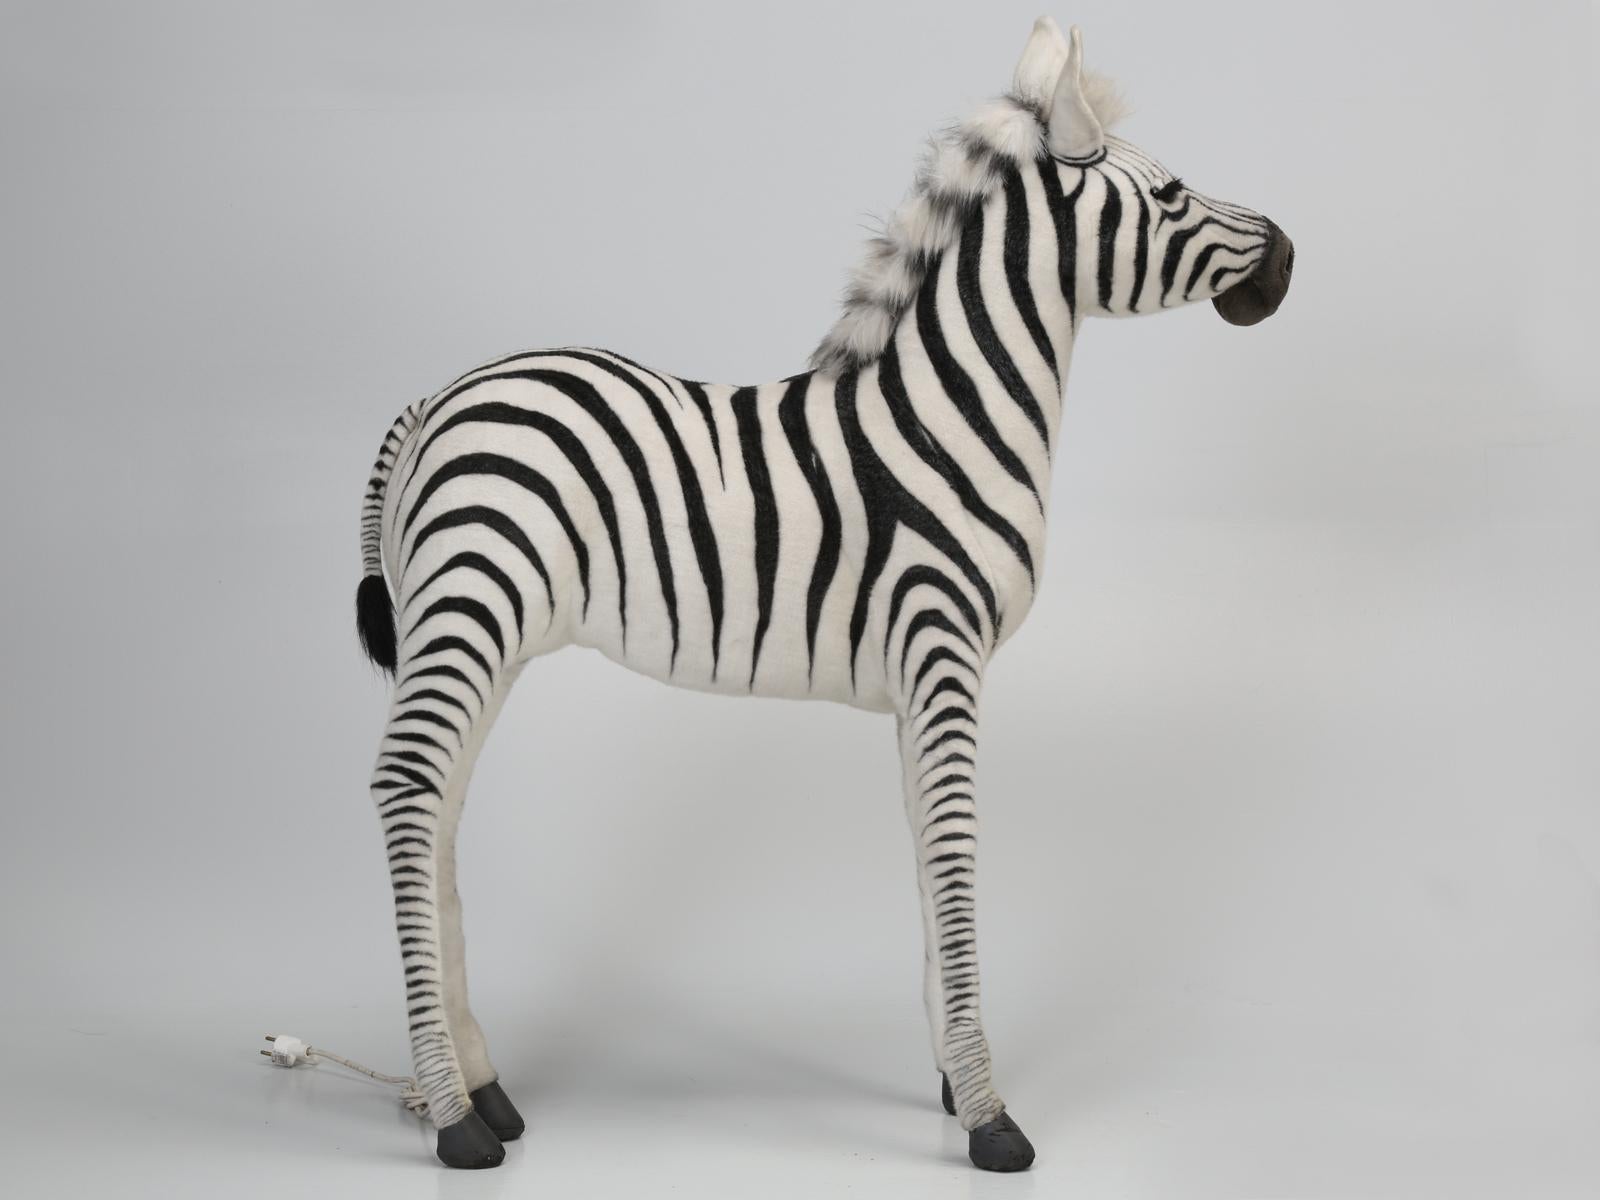 walking zebra toy